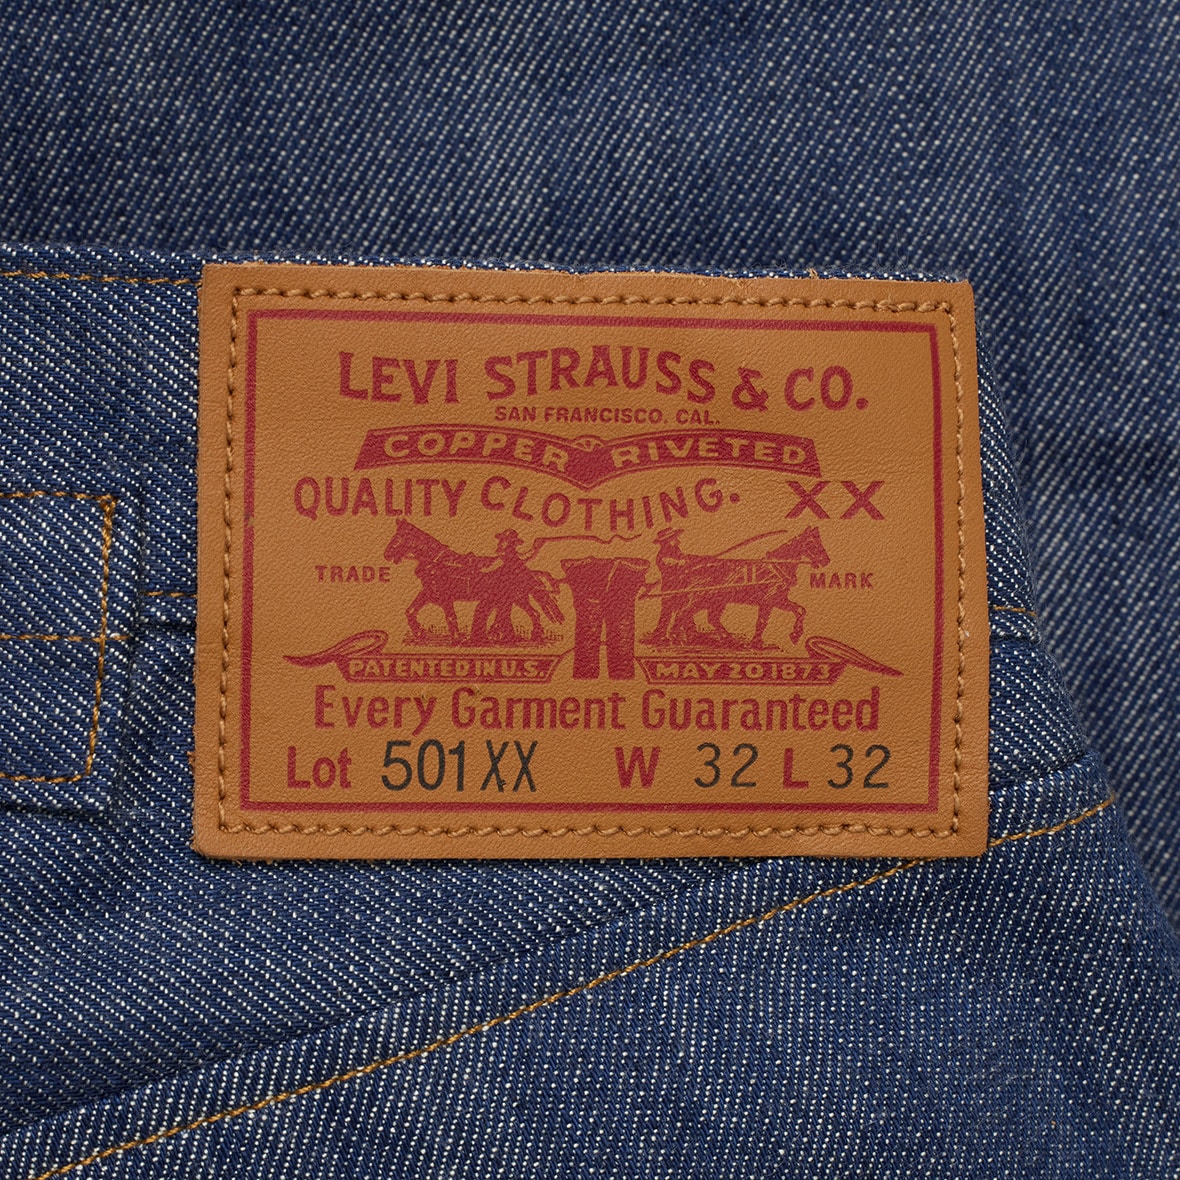 O jeans 501® completa 150 anos